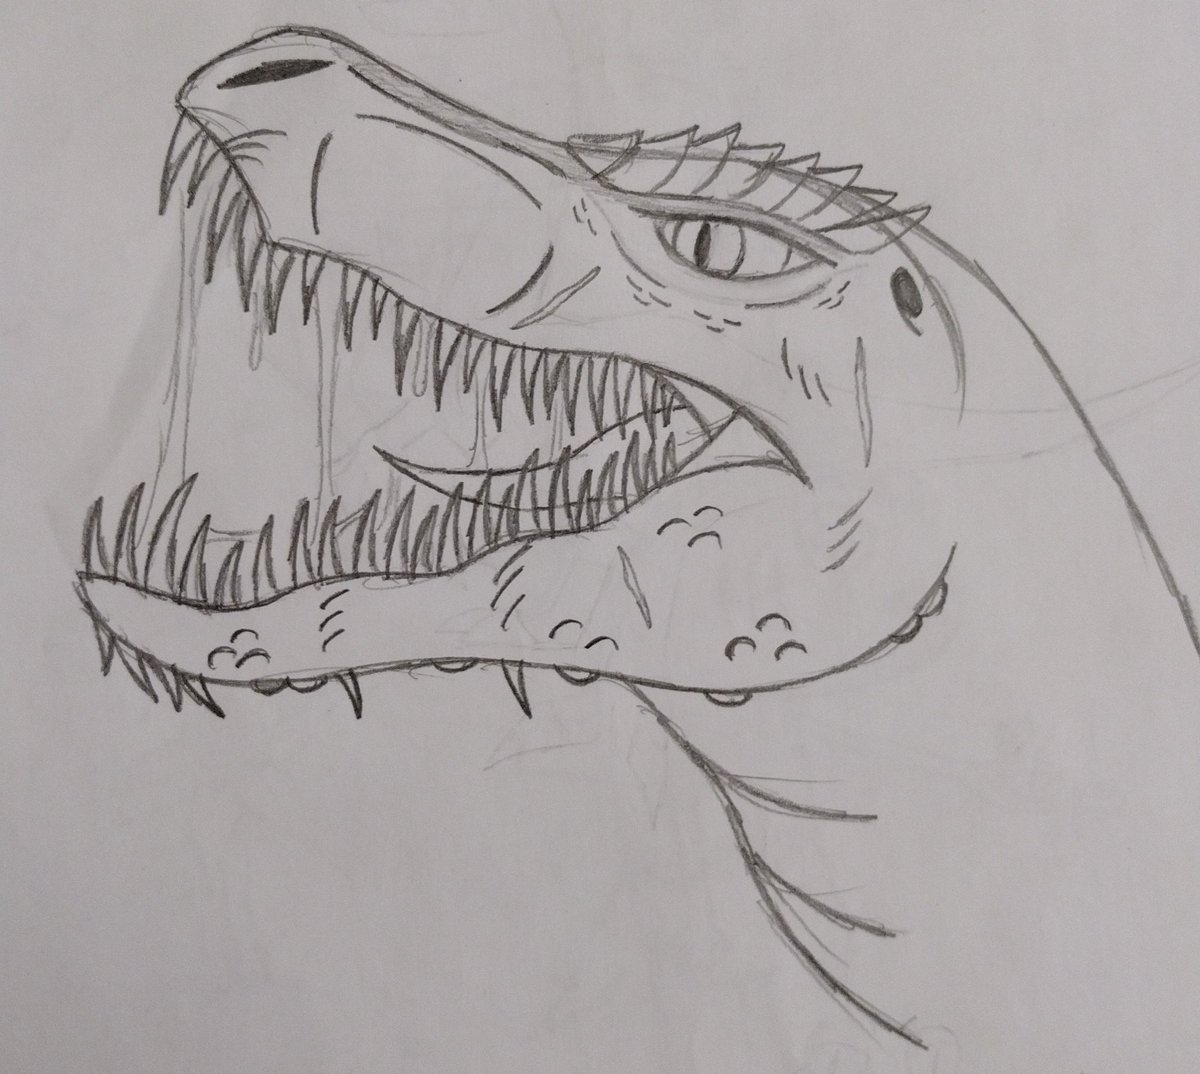 Como desenhar um dinossauro #desenho #dinossauro #dinossauros